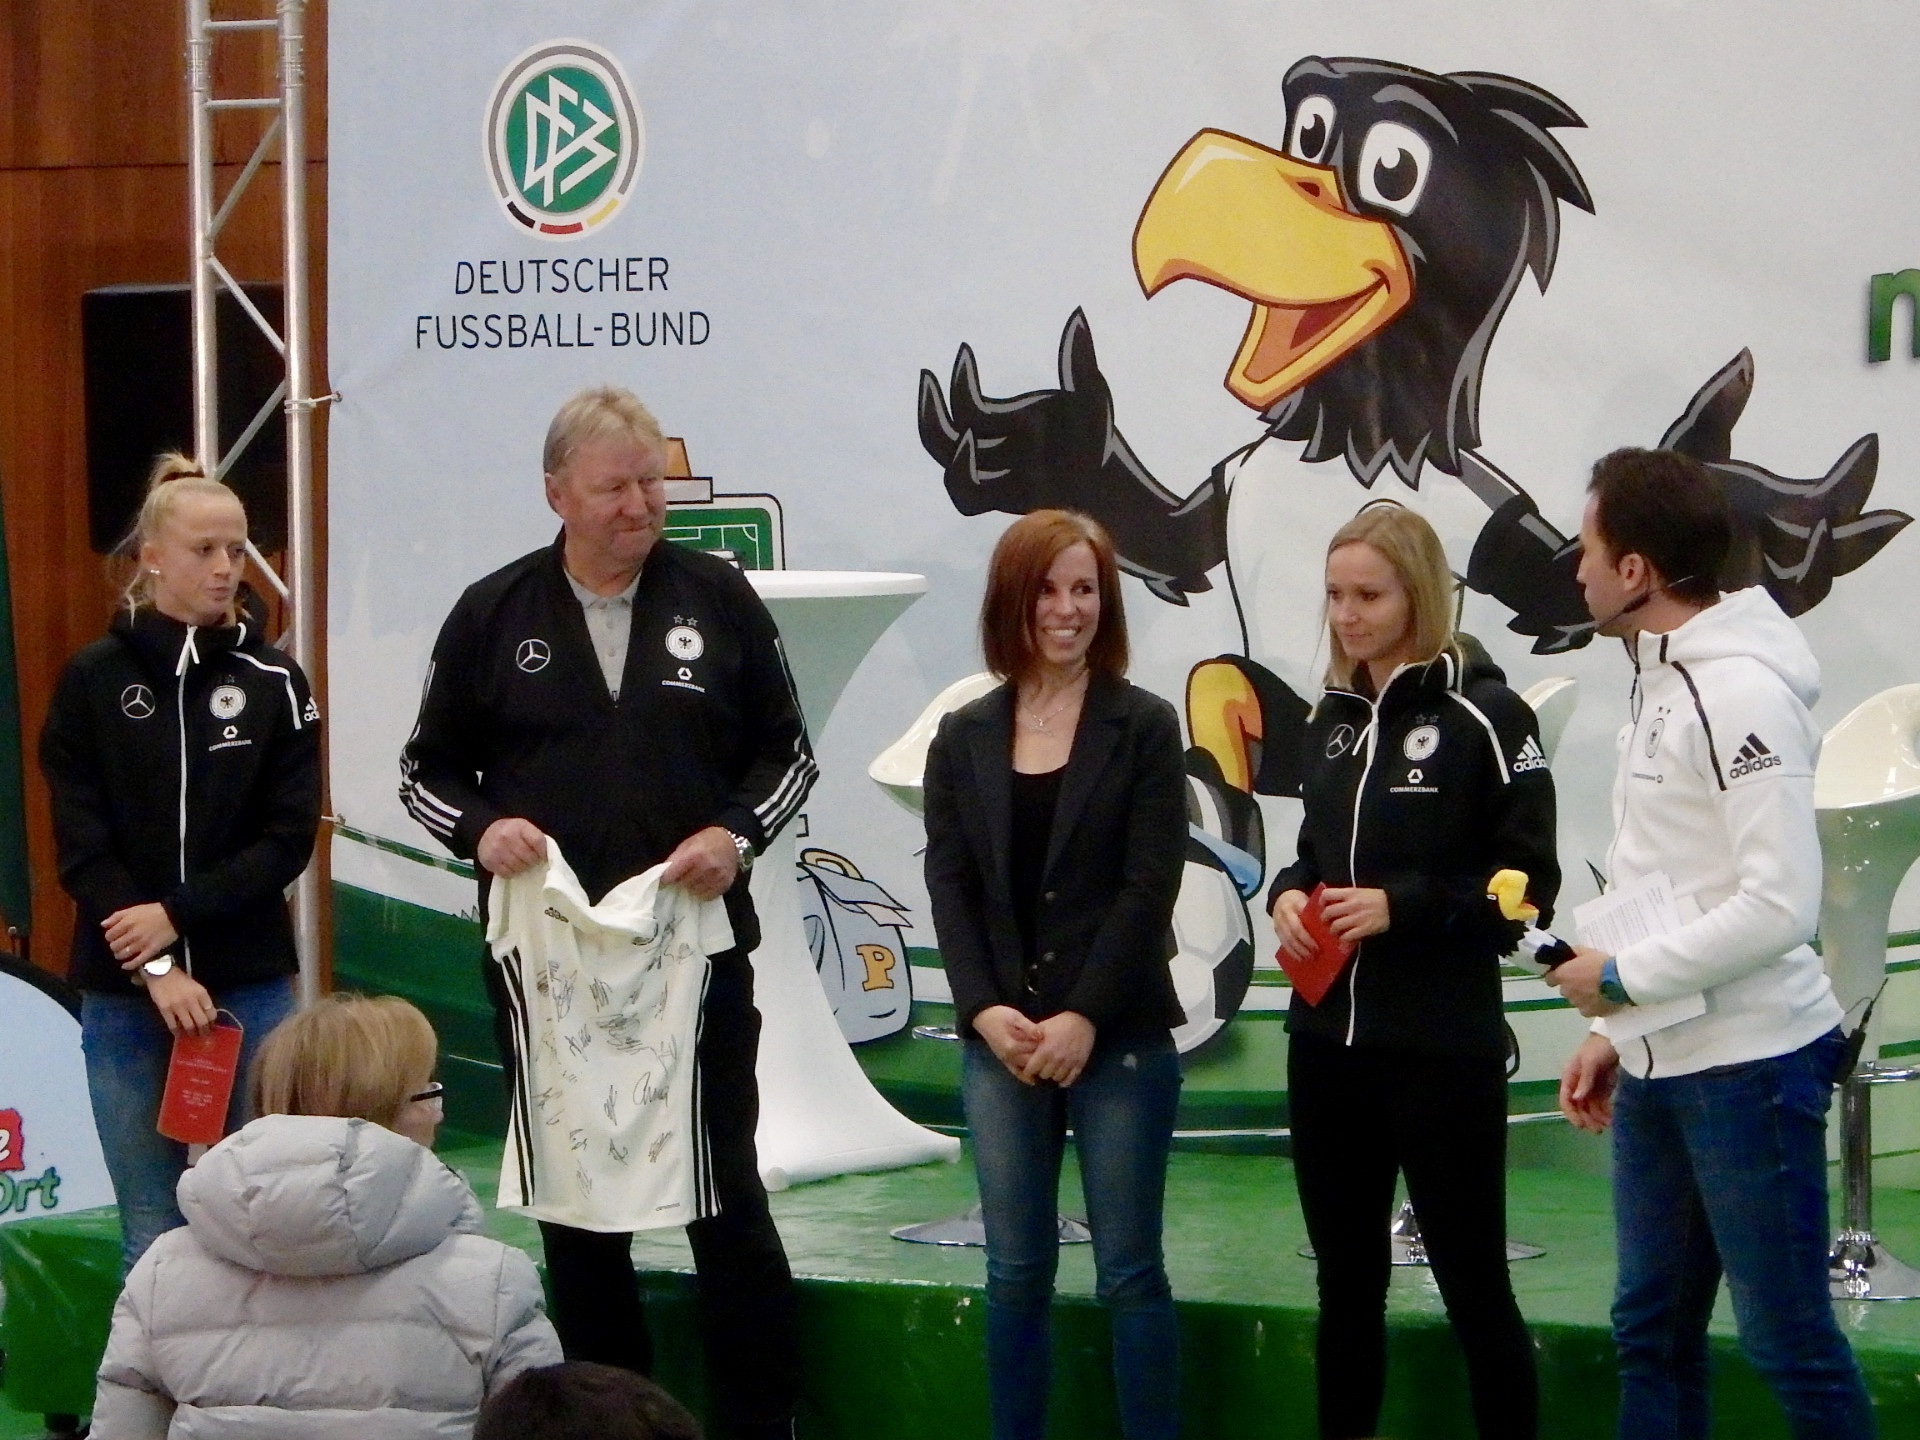 Am Ende brachten Horst Hrubesch,
 Lea Schüller und Turid Knaak Geschenke mit und überreichten diese an Frau Lüdecke.